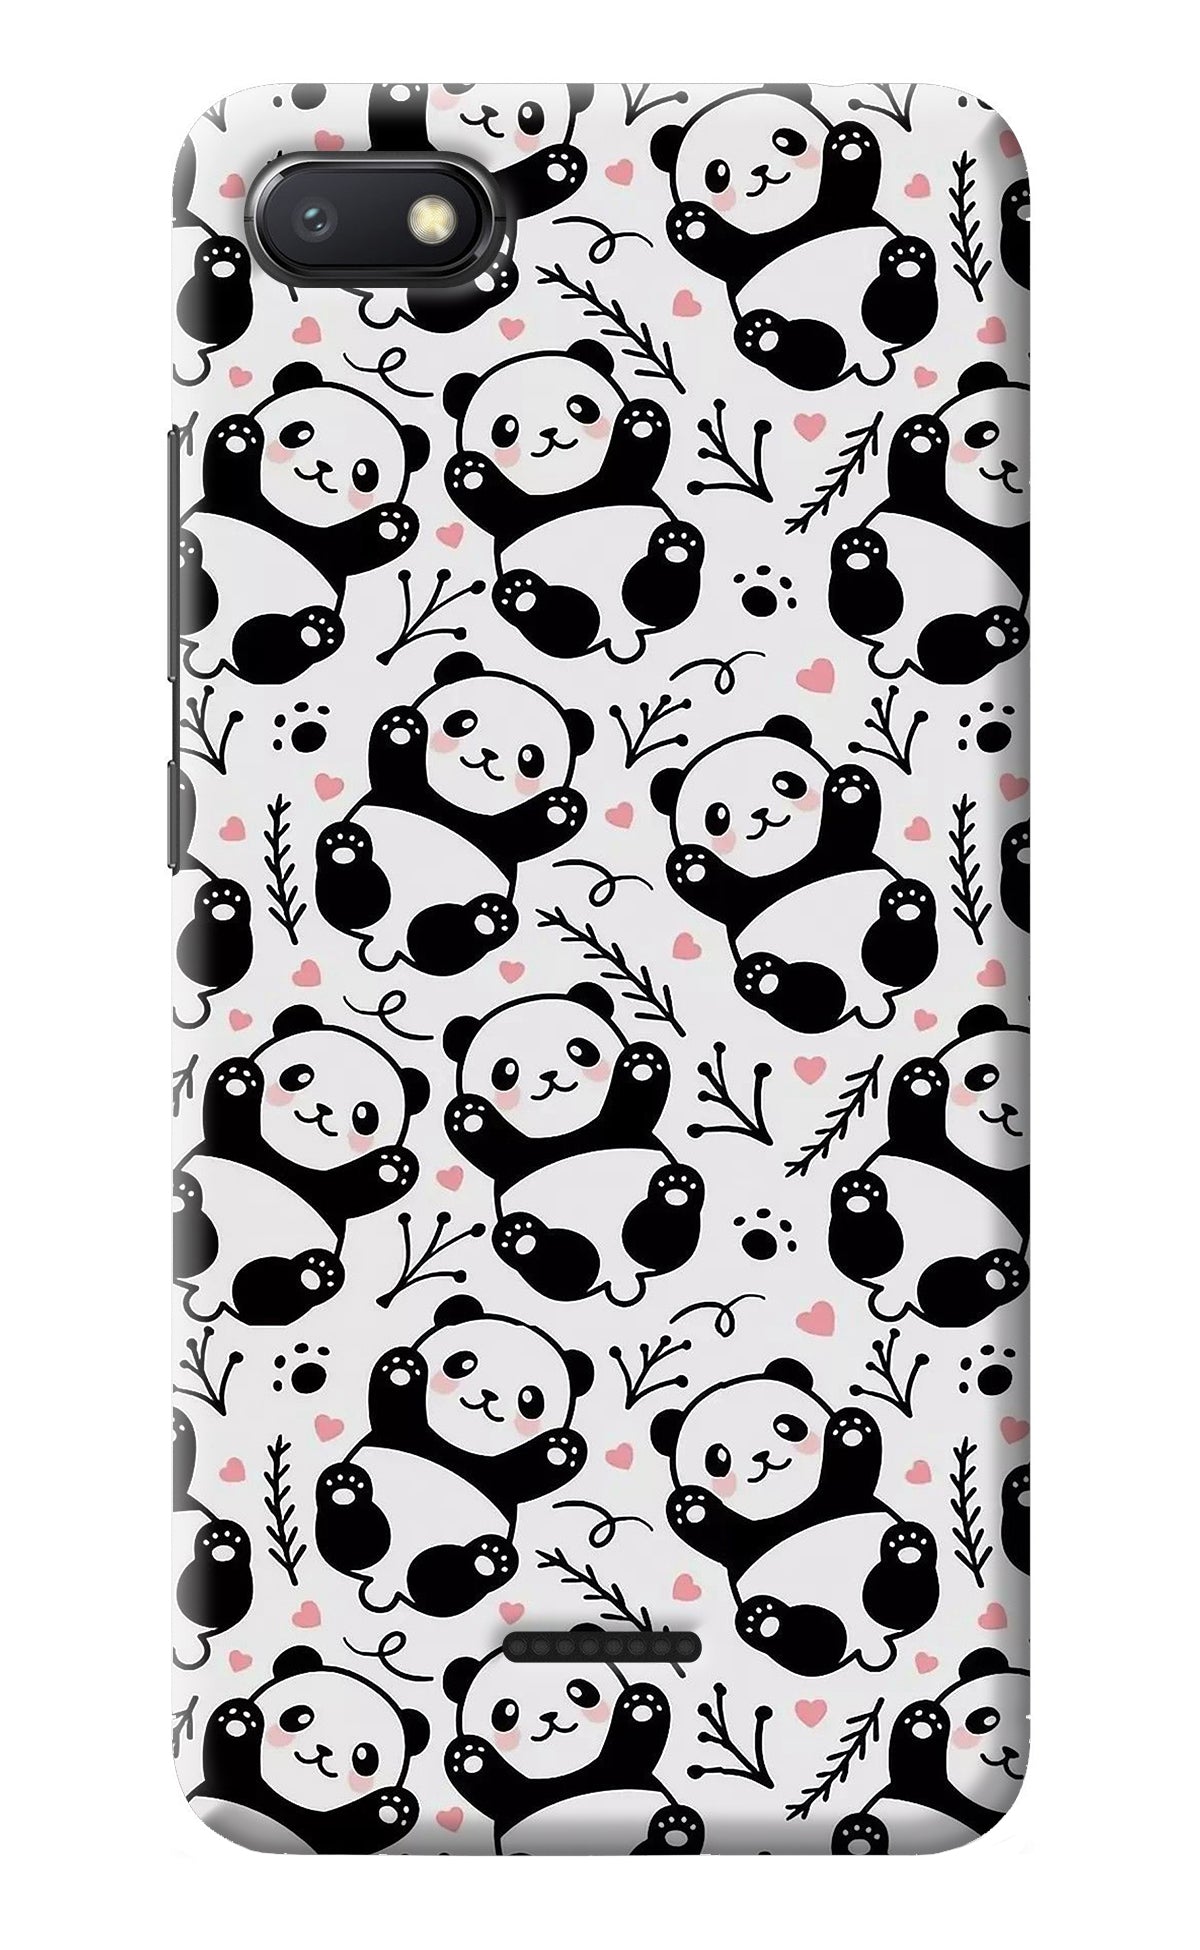 Cute Panda Redmi 6A Back Cover